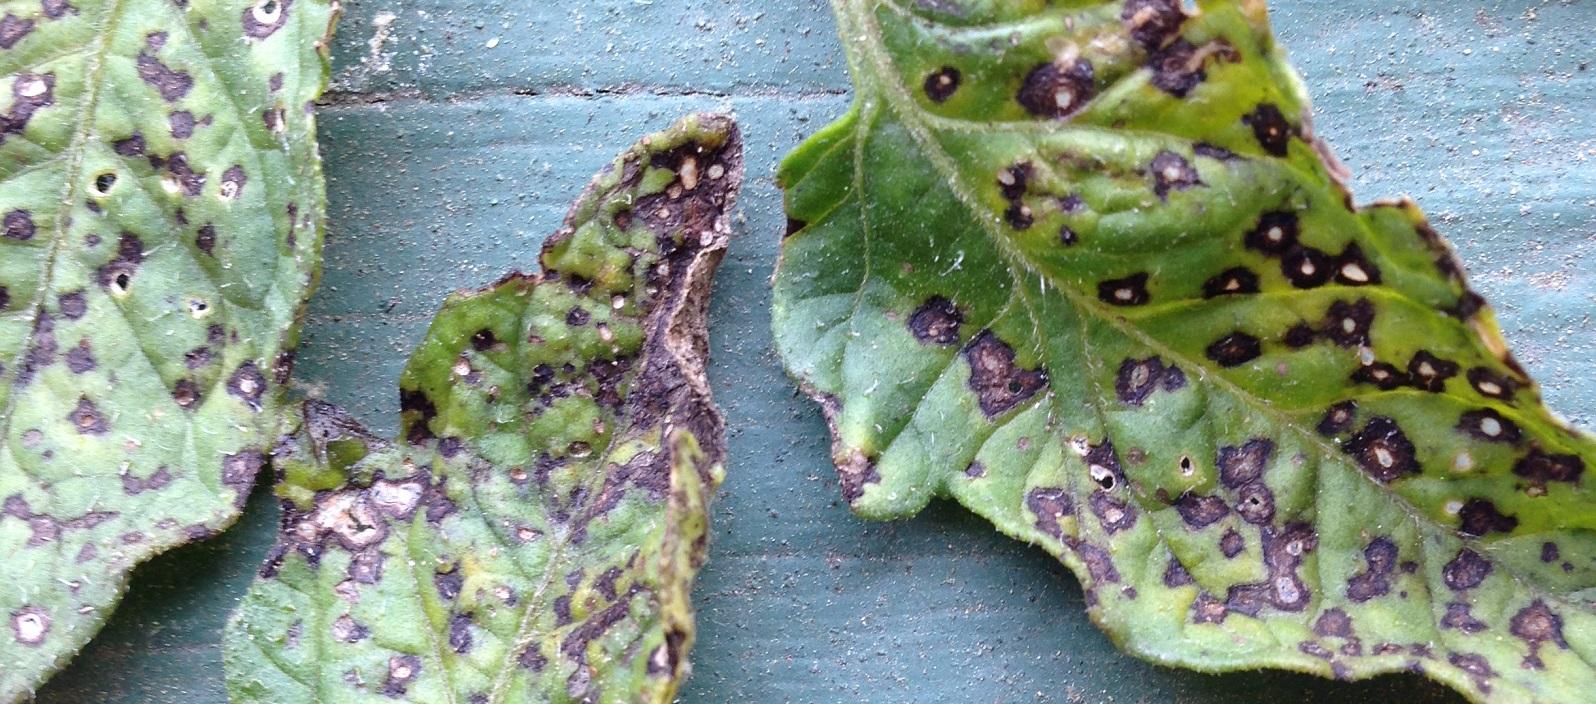 Septoria Leaf Spot | The Coeur d Alene Coop